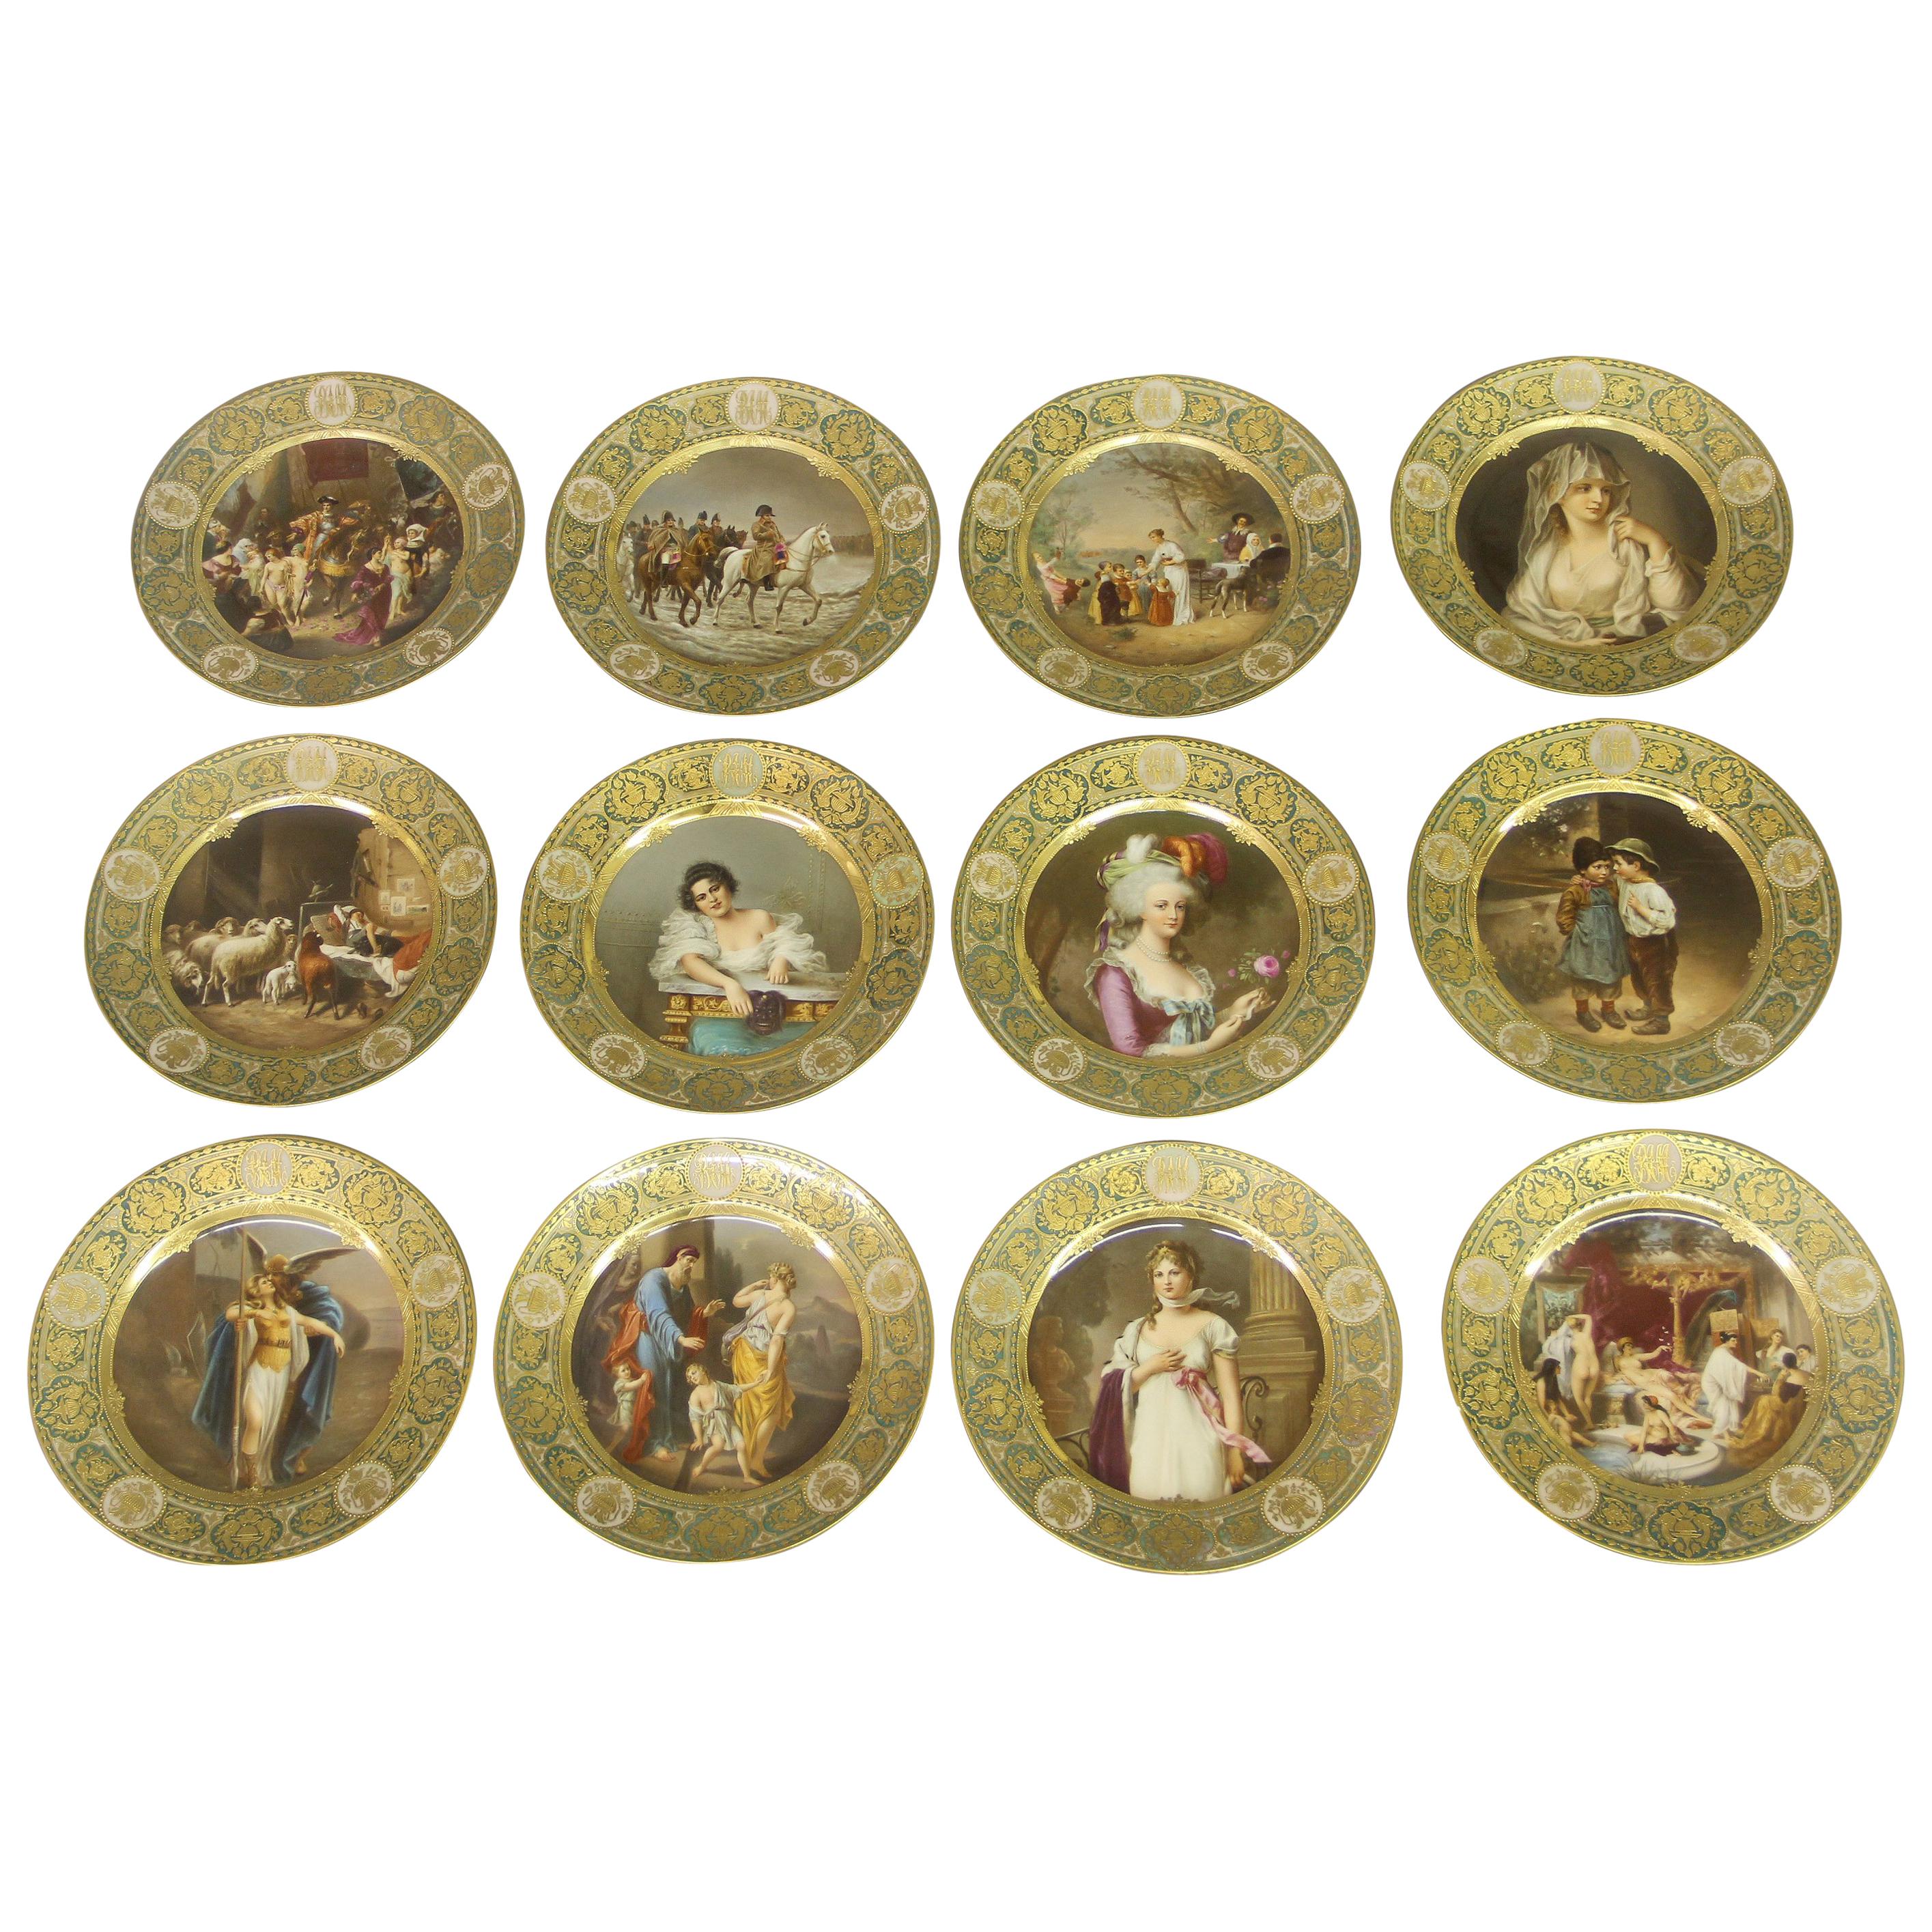 Rare service de douze assiettes de collection en porcelaine allemande de Dresde de la fin du 19e siècle